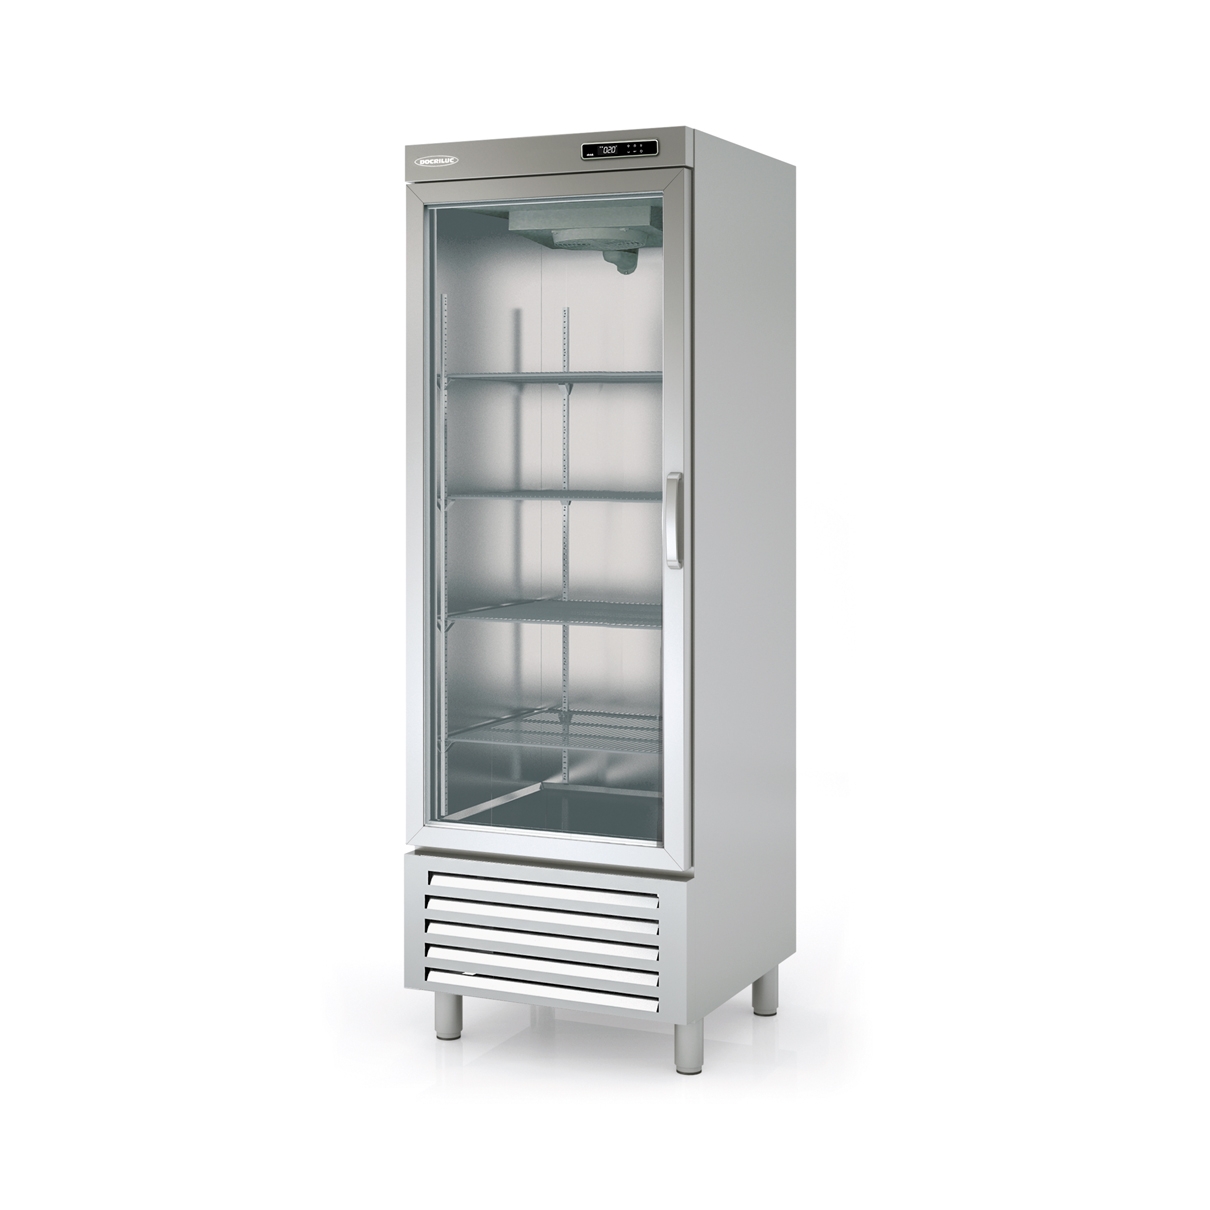 Snack Freezing Cabinet ACSV-75-1